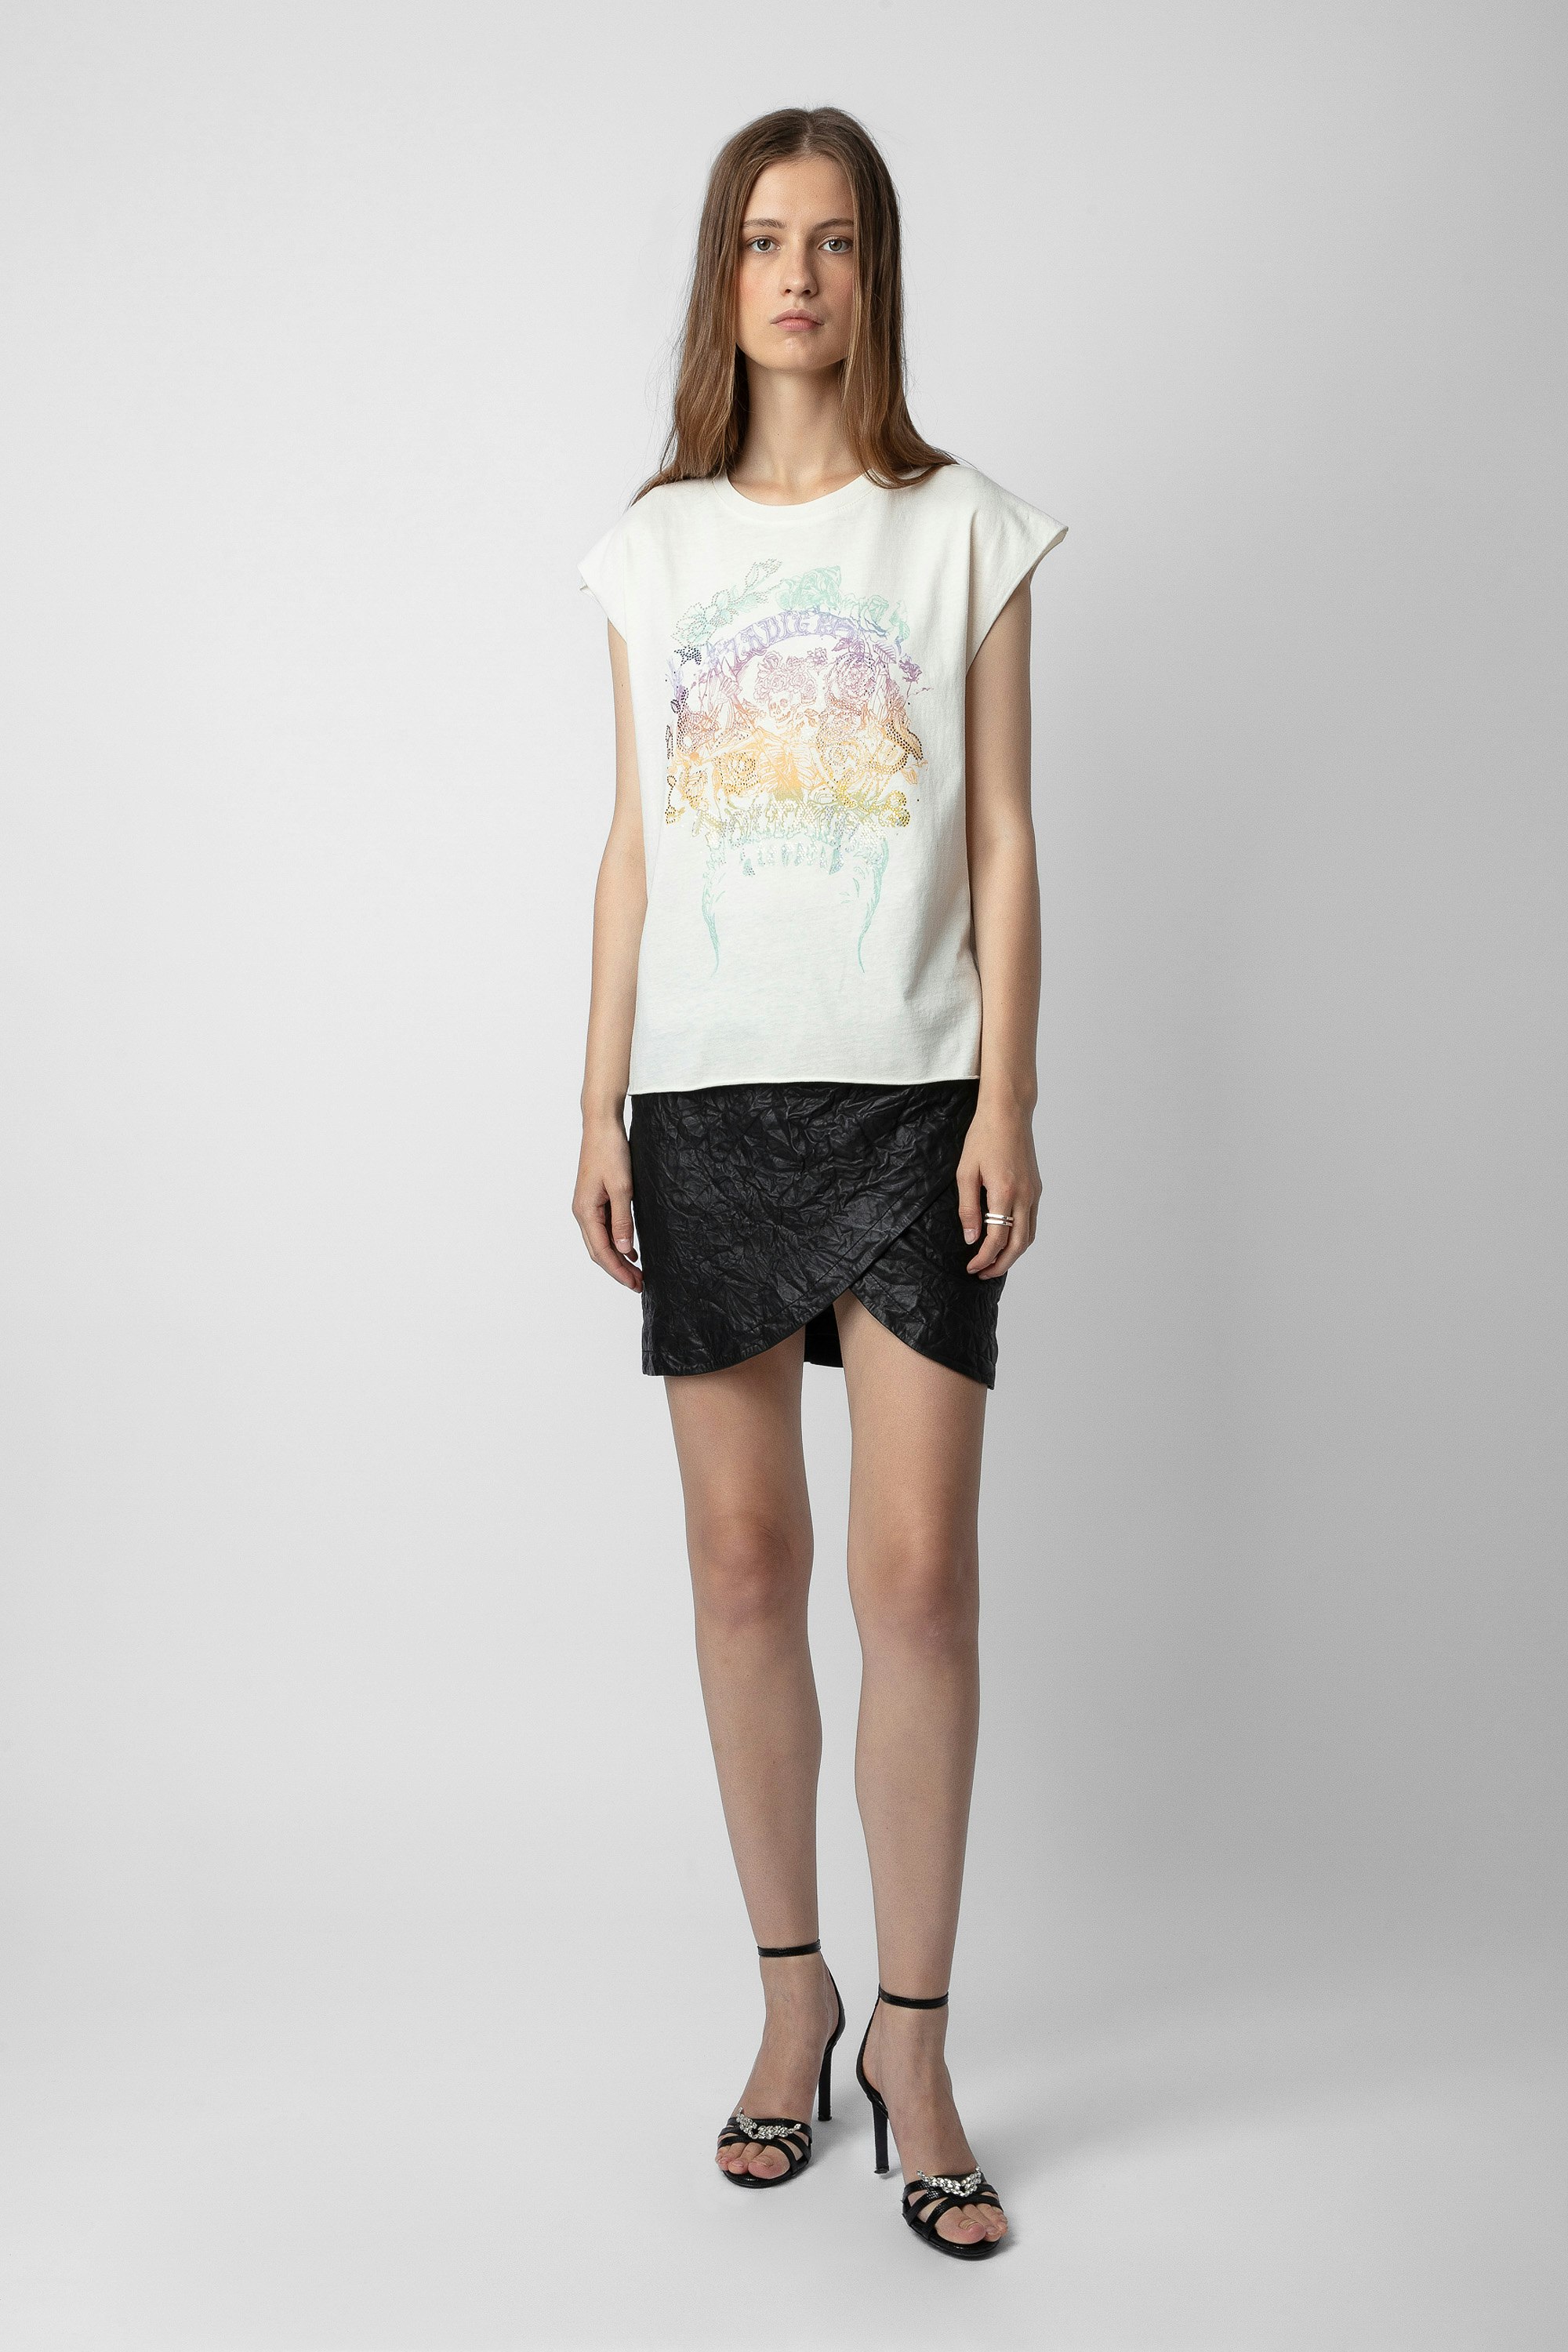 Camiseta Cecilia Strass - Camiseta de color crudo de tirantes de algodón con estampado de calaveras y strass para mujer